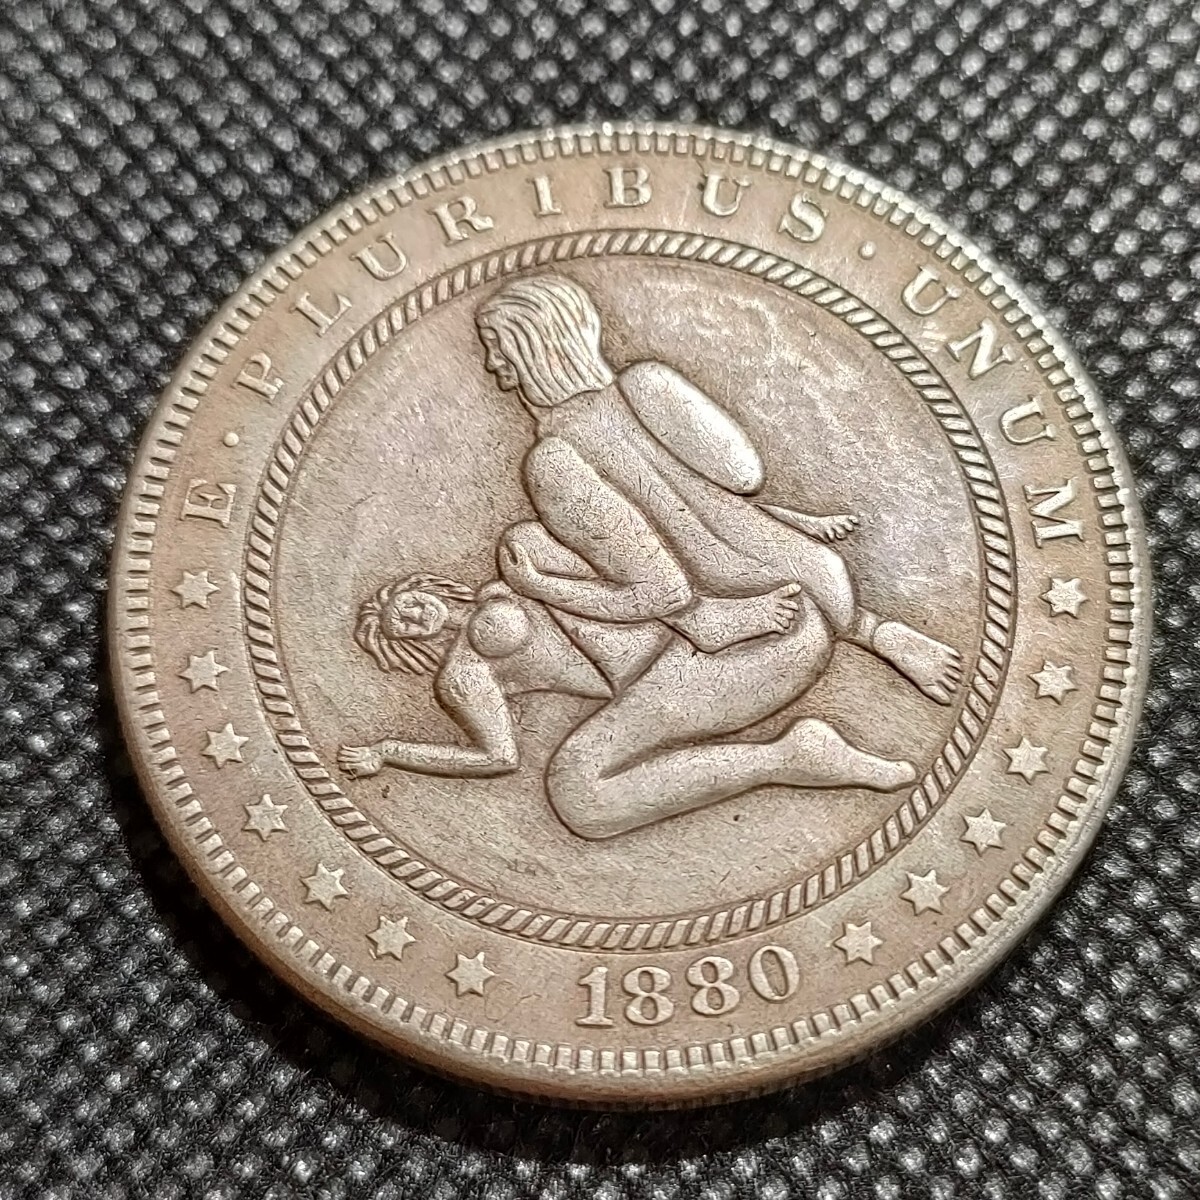 6126 アメリカ古銭 ルンペン 約38mm イーグル チャレンジコイン ゴルフマーカー コイン アンティーク ホーボーの画像1